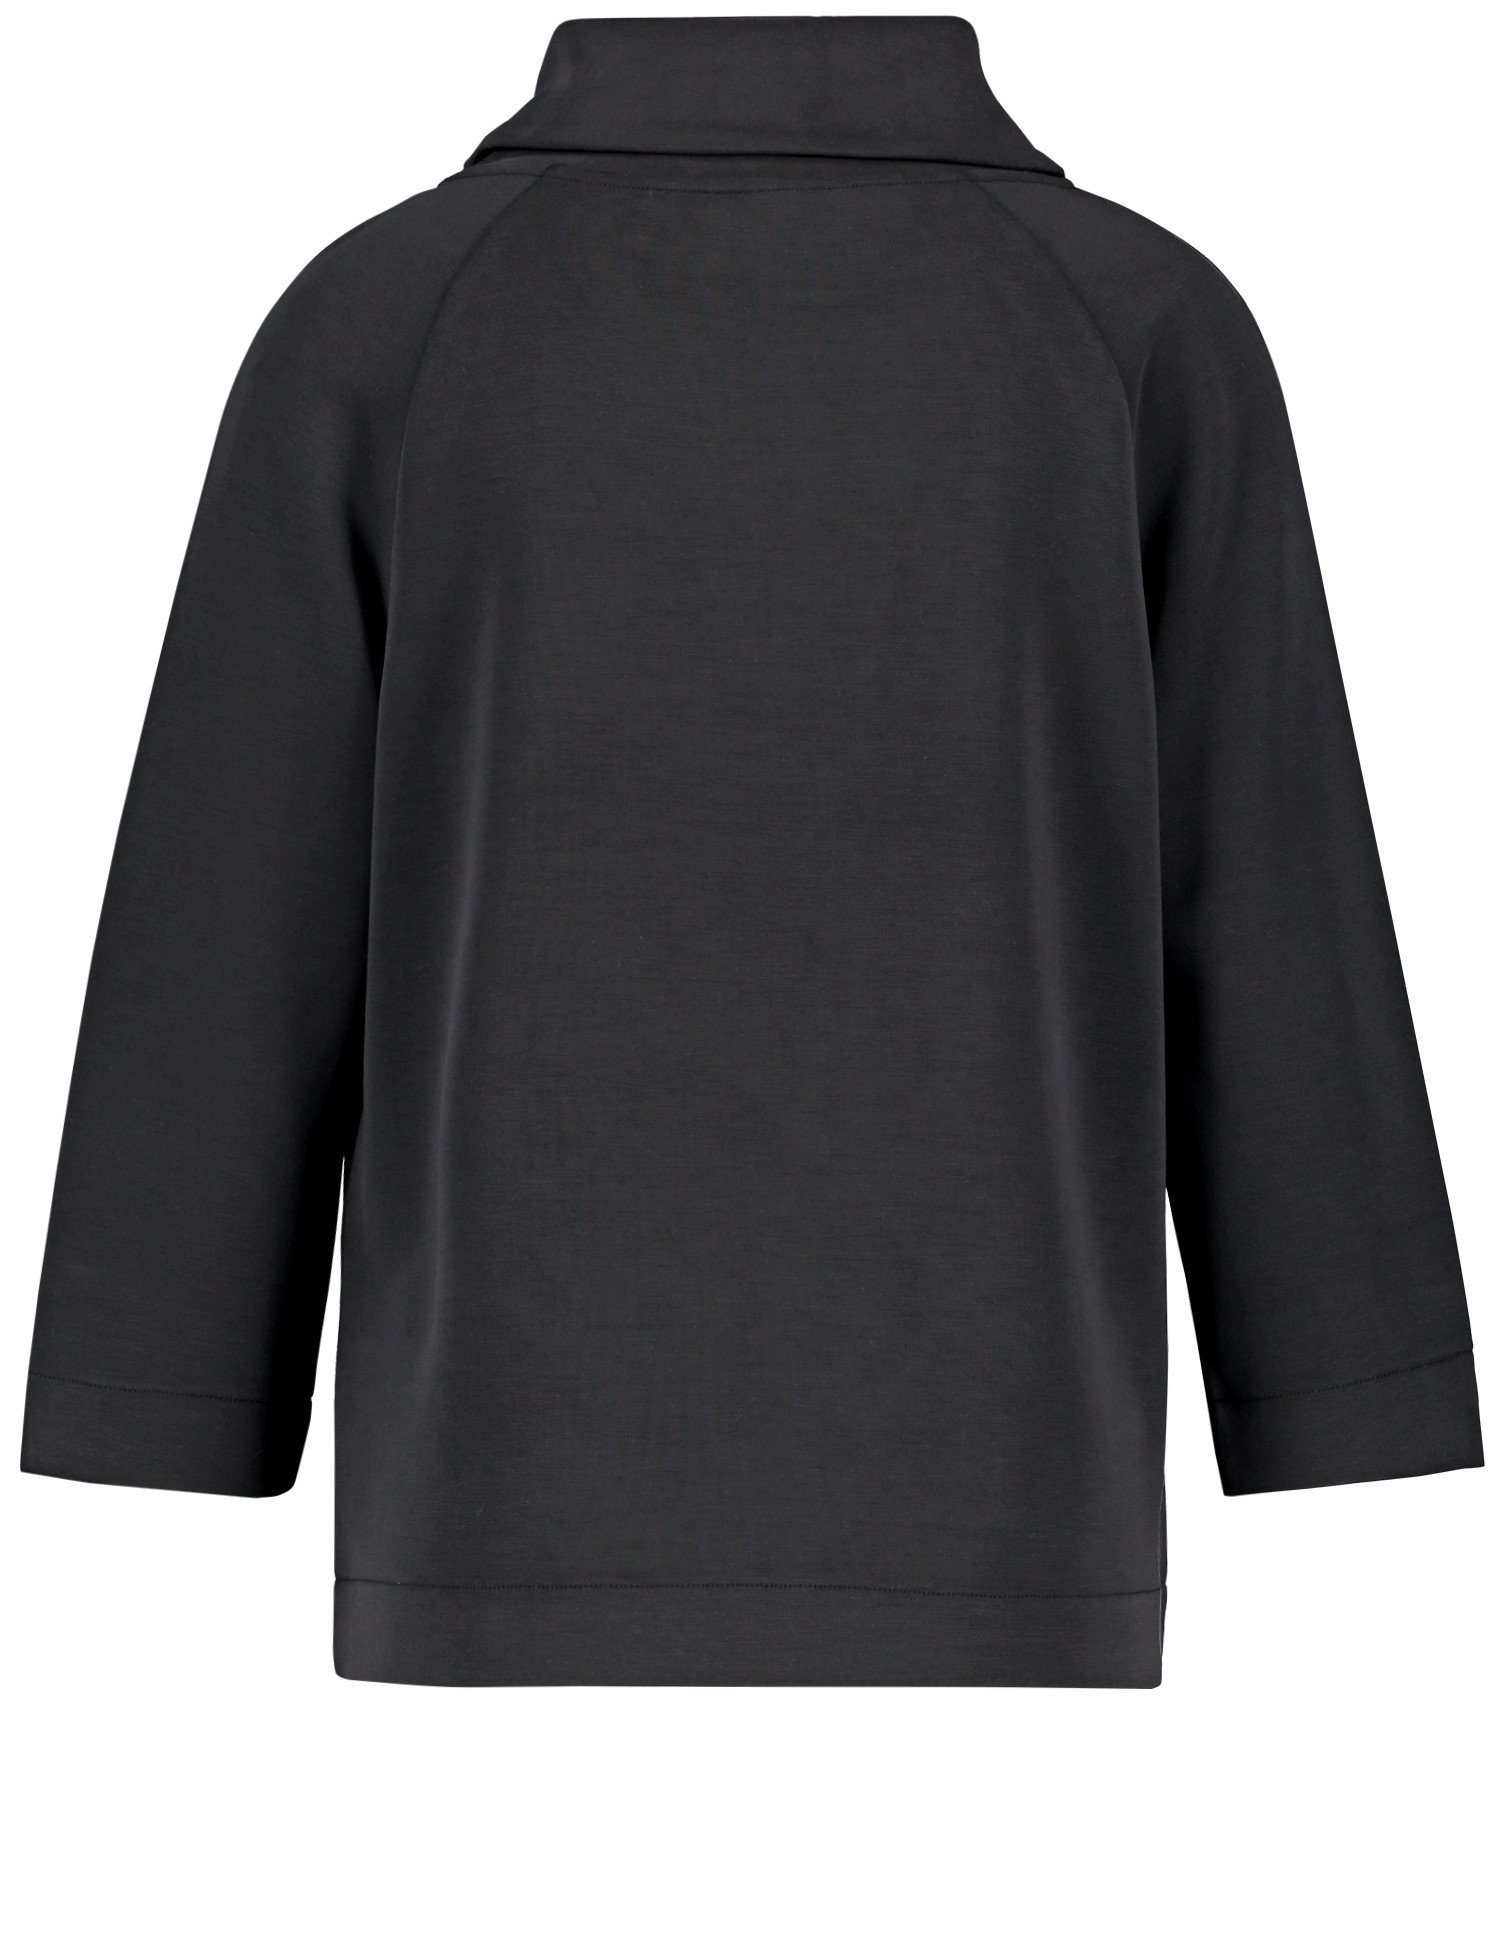 aus WEBER 3/4 Shirt Arm Schwarz GERRY 3/4-Arm-Shirt Interlock-Jersey